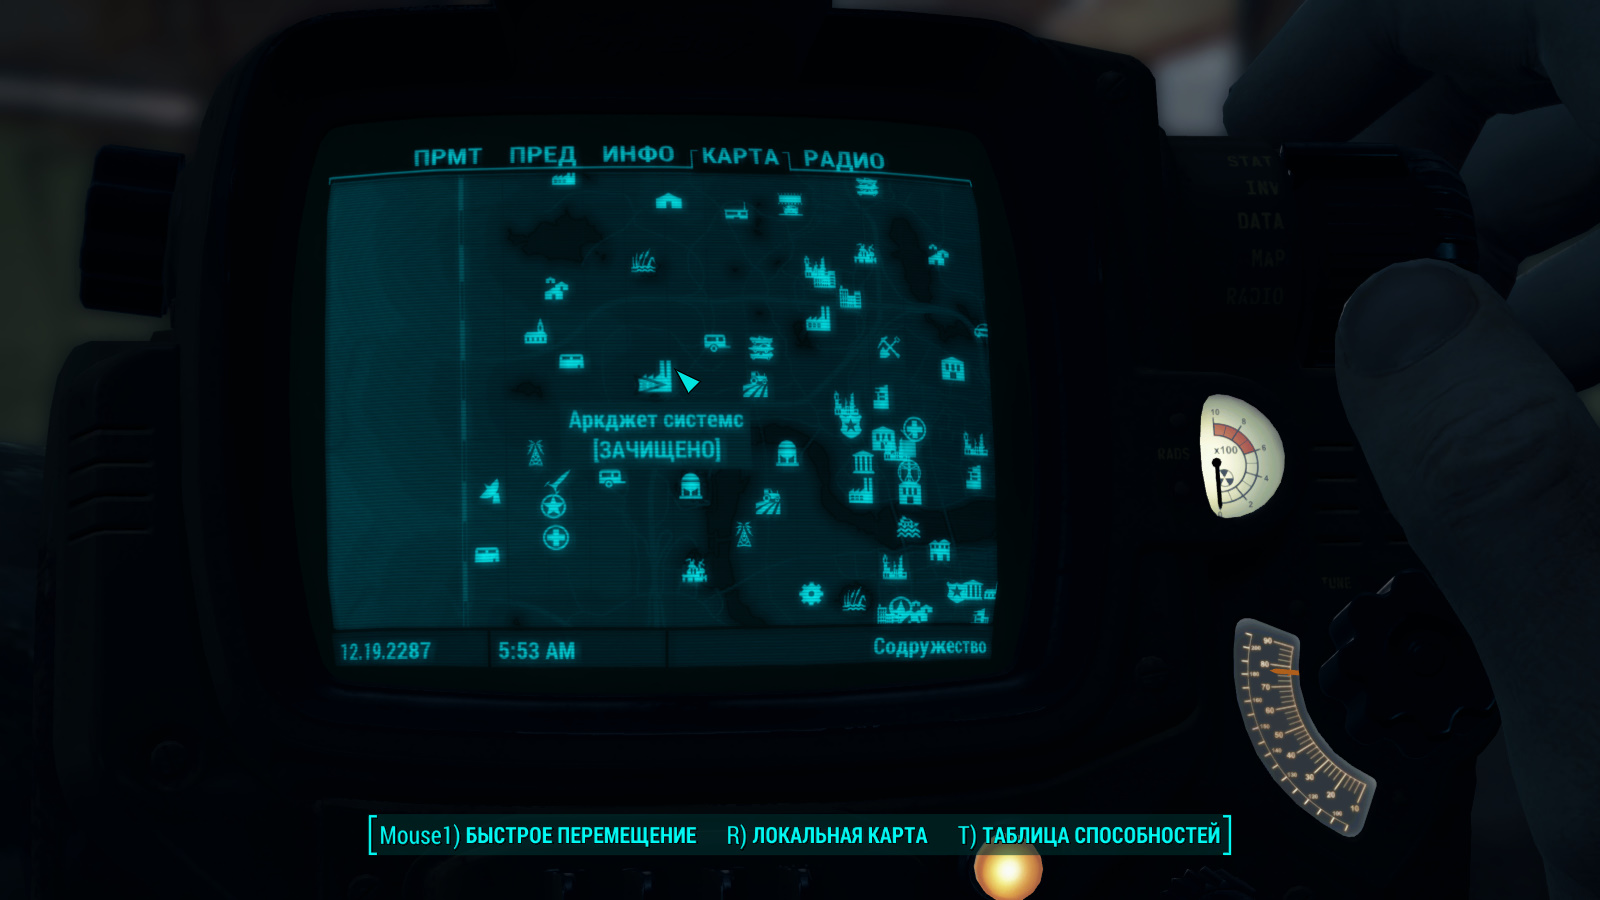 Fallout 4 аркджет системс как открыть дверь (115) фото